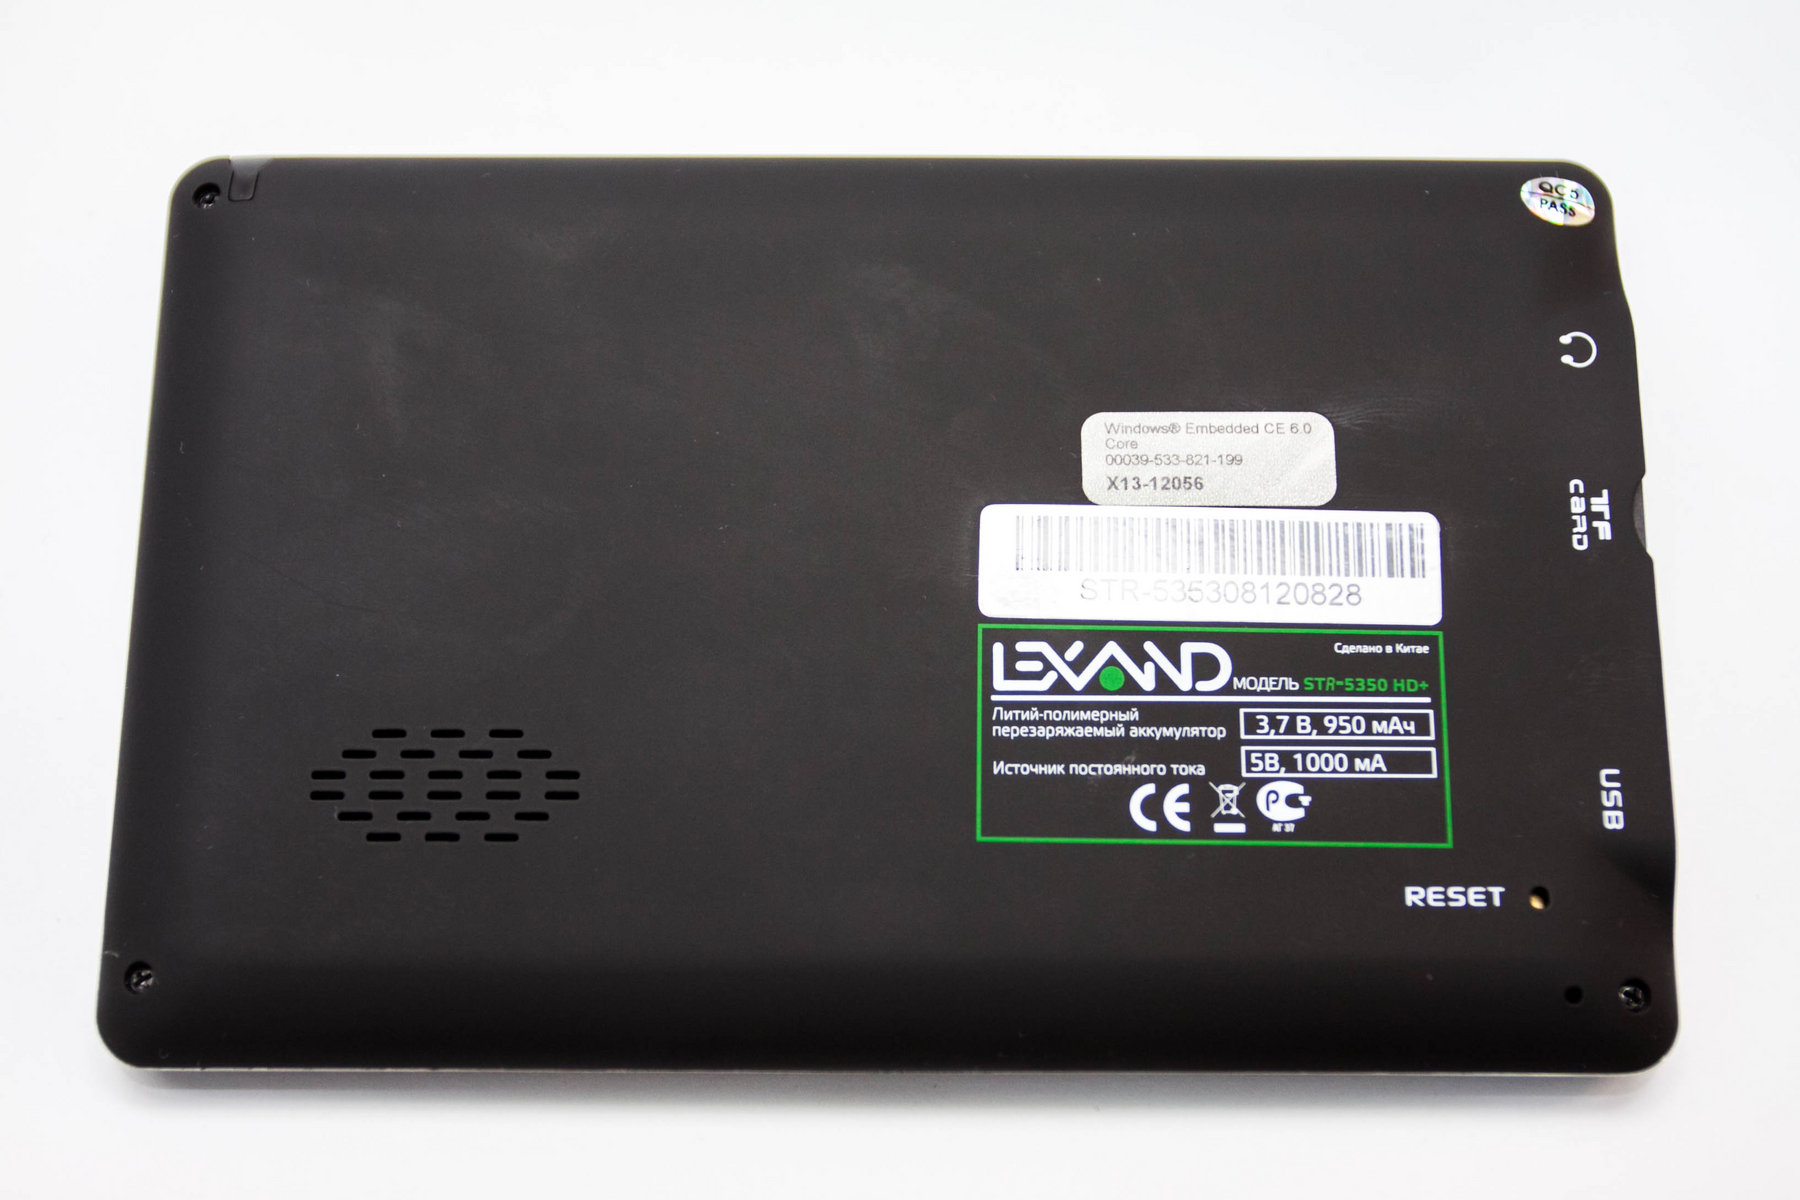 Lexand STR-5350 HD+